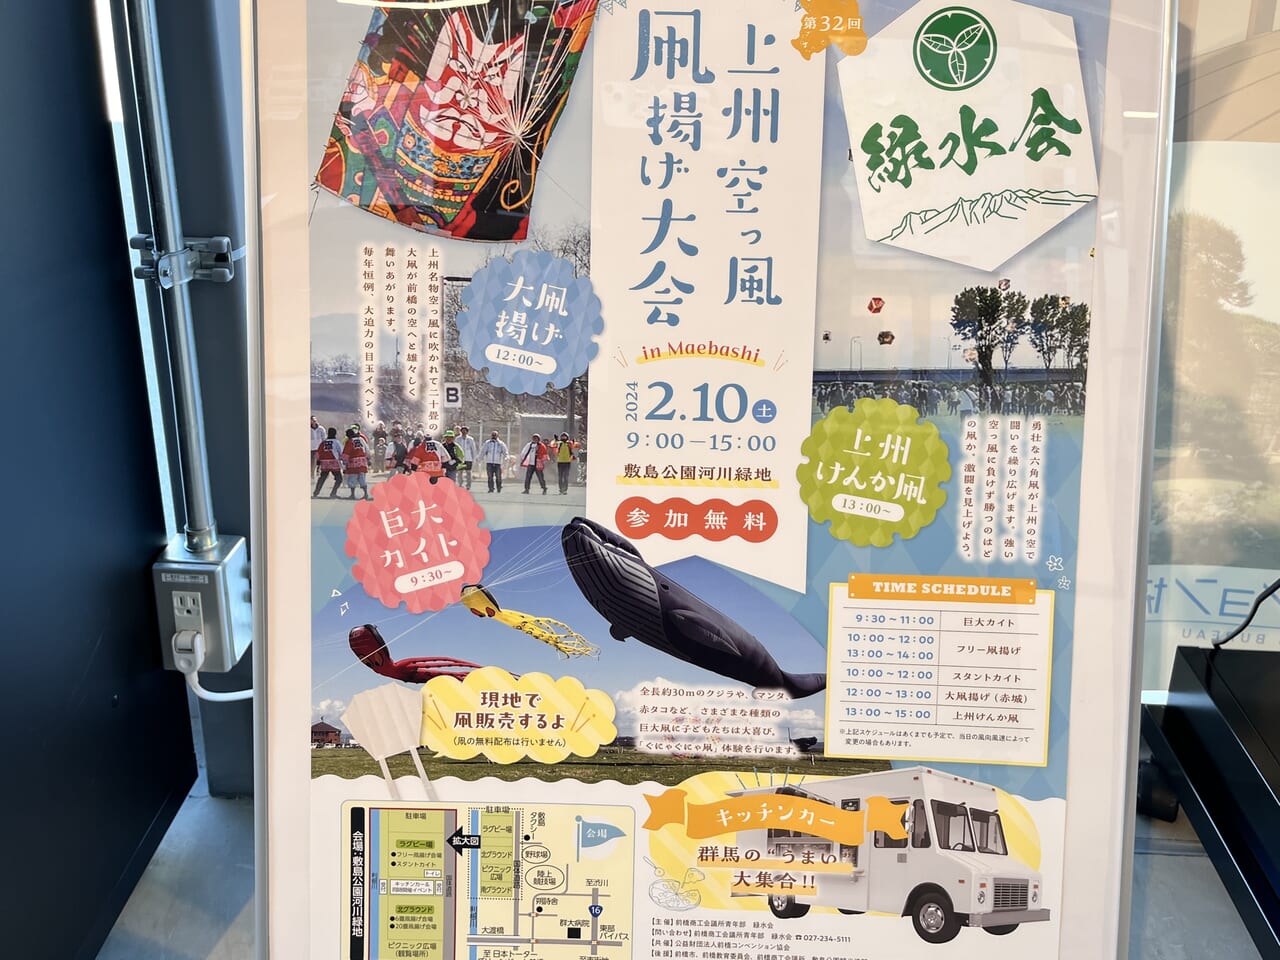 「上州空っ風 凧揚げ大会」開催告知のポスター